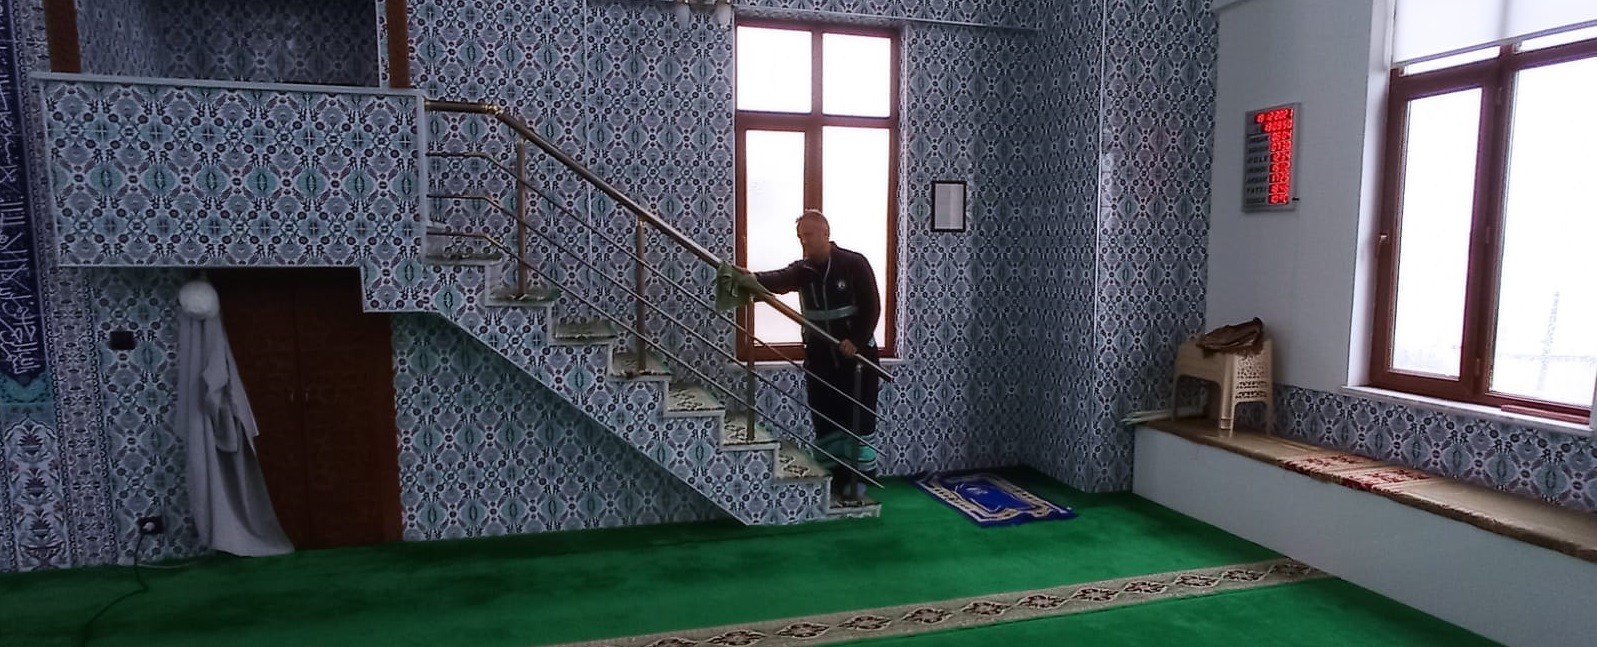 Şahinbey’de camilere kış temizliği #gaziantep